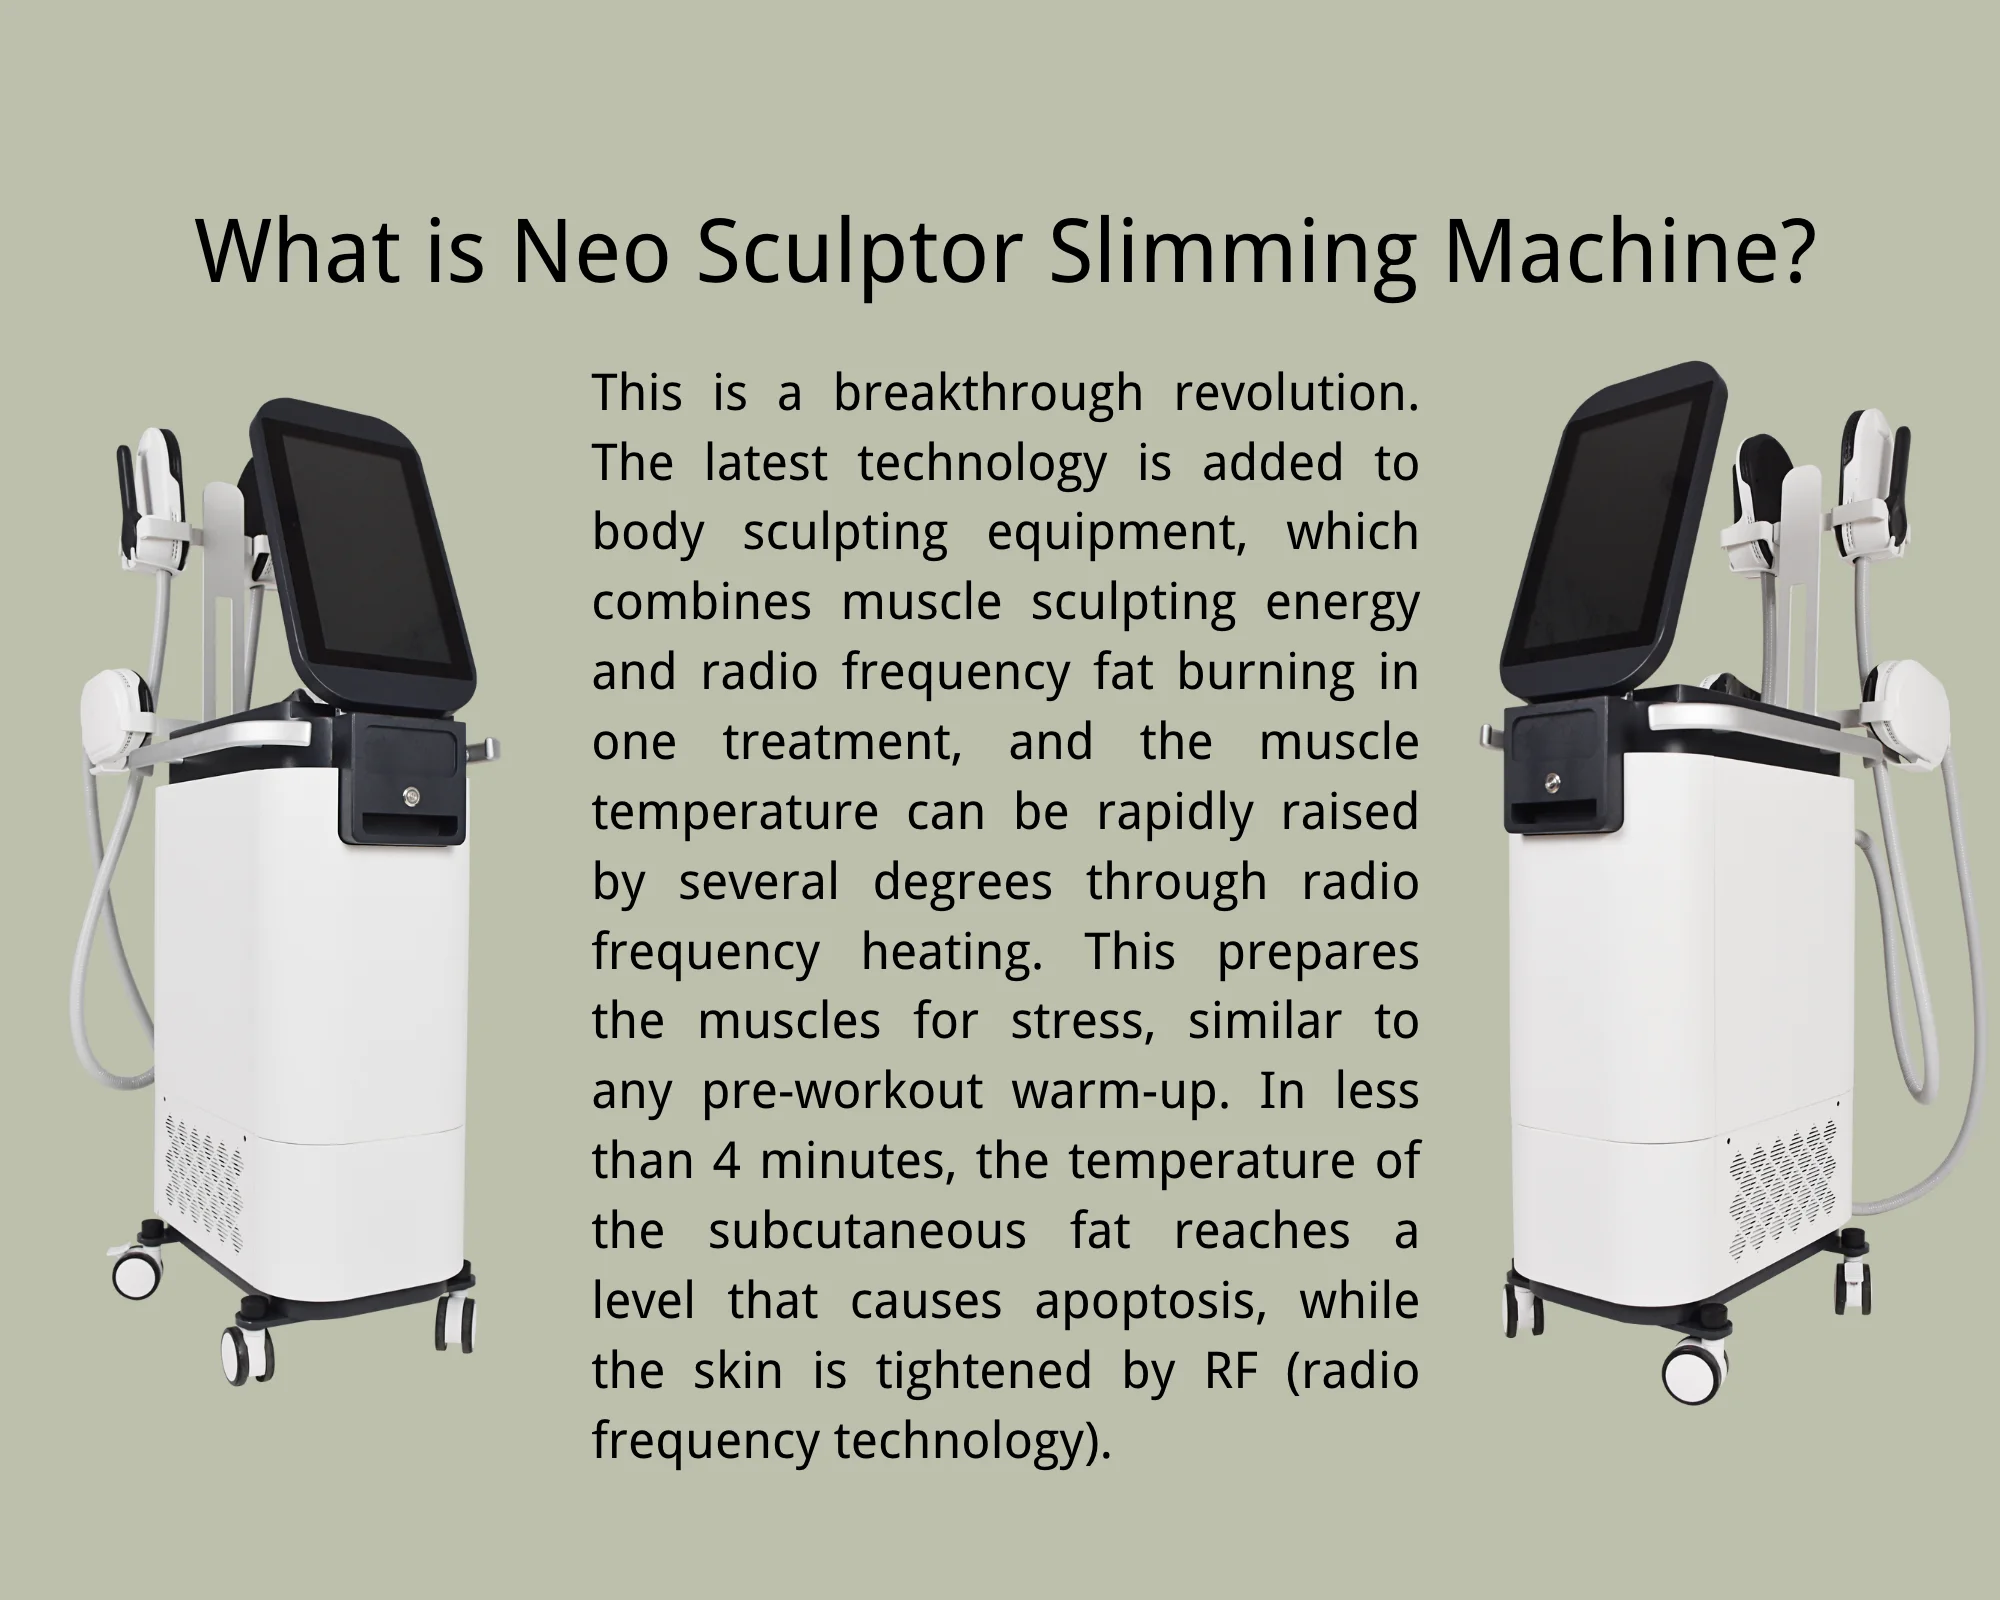 Neo Sculptor Slimming Machine